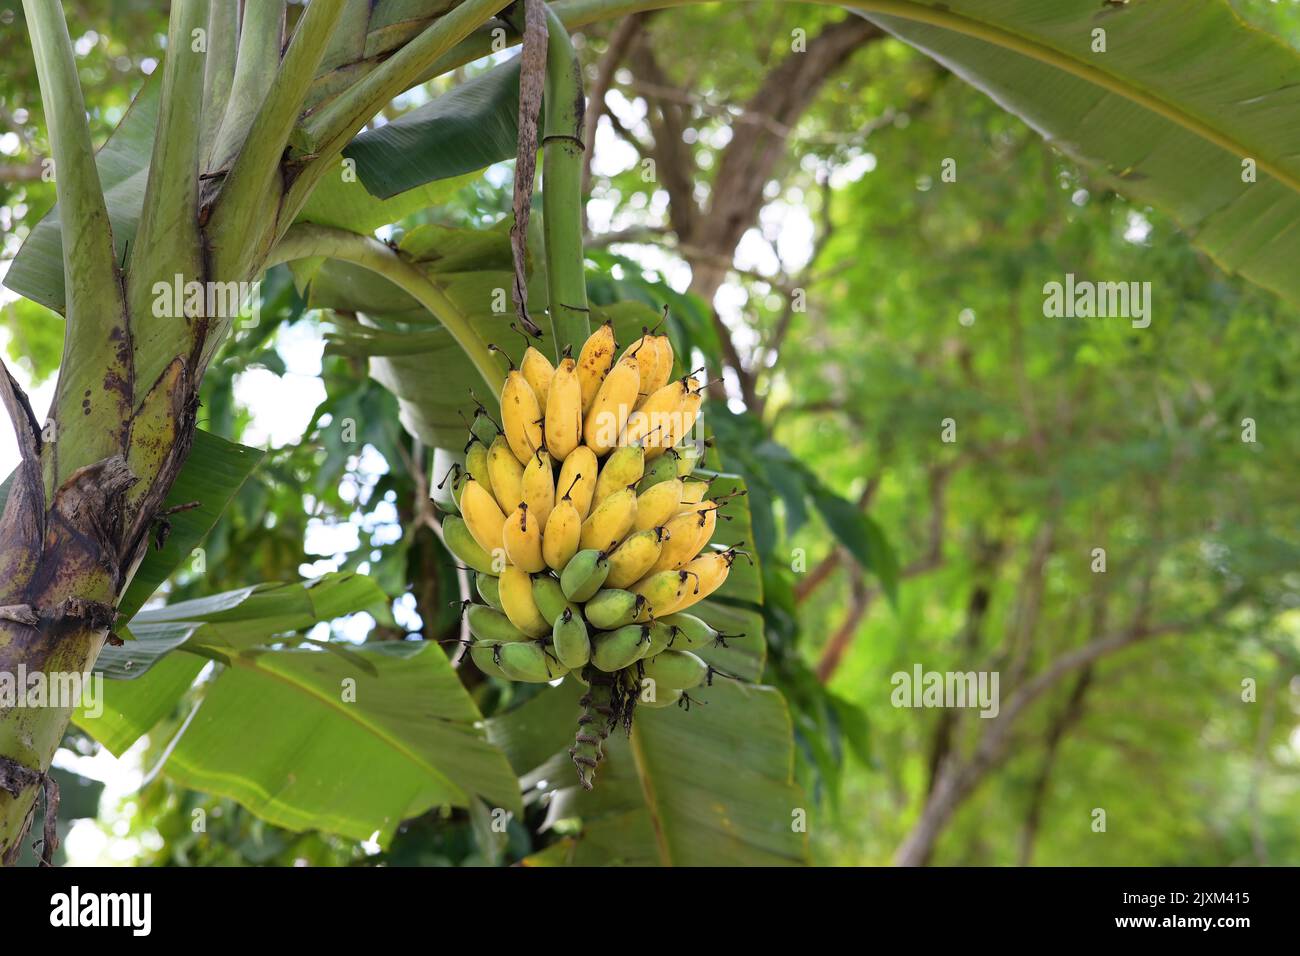 Les bananes sont vertes et jaunes.les bananes cultivées sont douces et délicieuses,Ducasse Banana. Banque D'Images